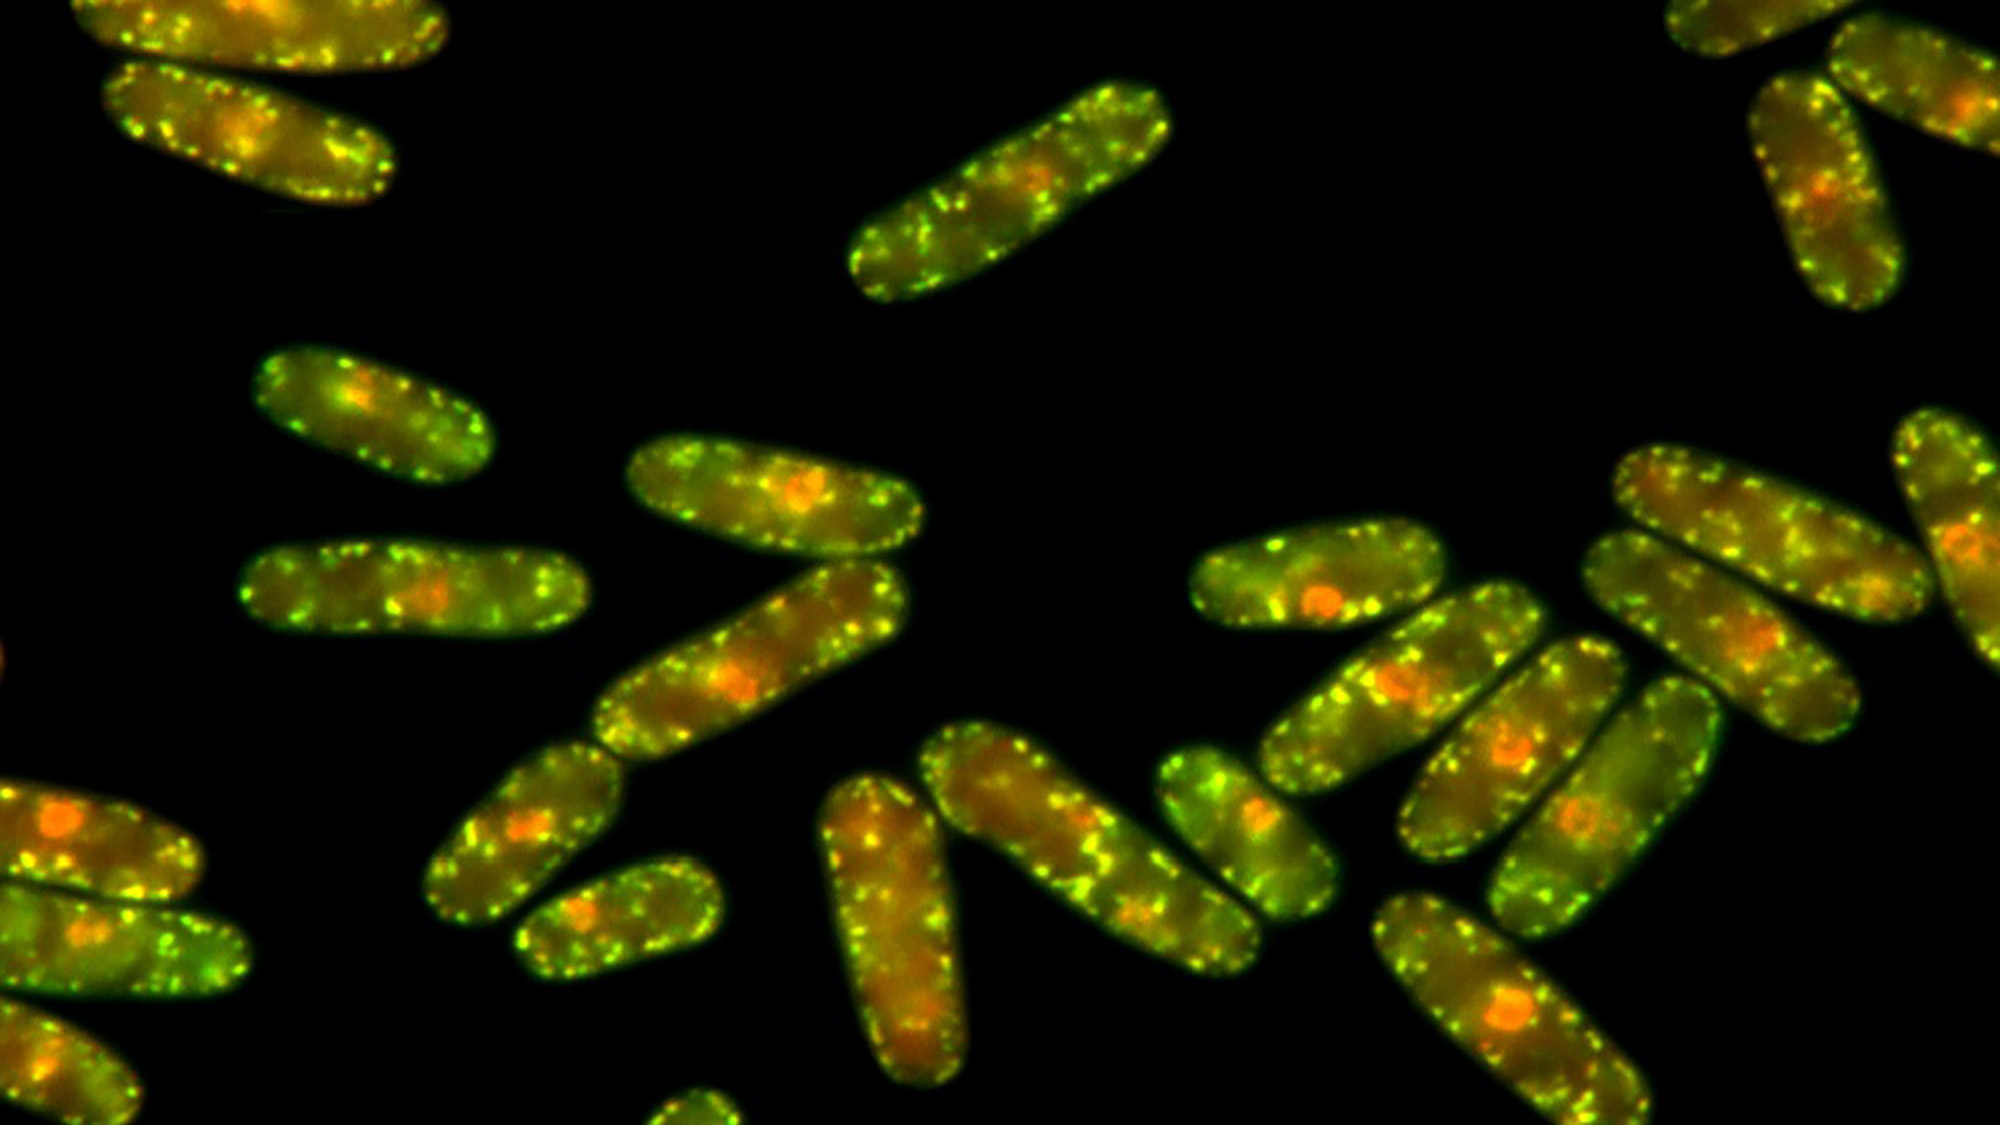 Agregados de proteínas que aparecen en células de levadura Schizosaccharomyces pombe expuestas a elevadas temperaturas. | Imagen de Margarita Cabrera.